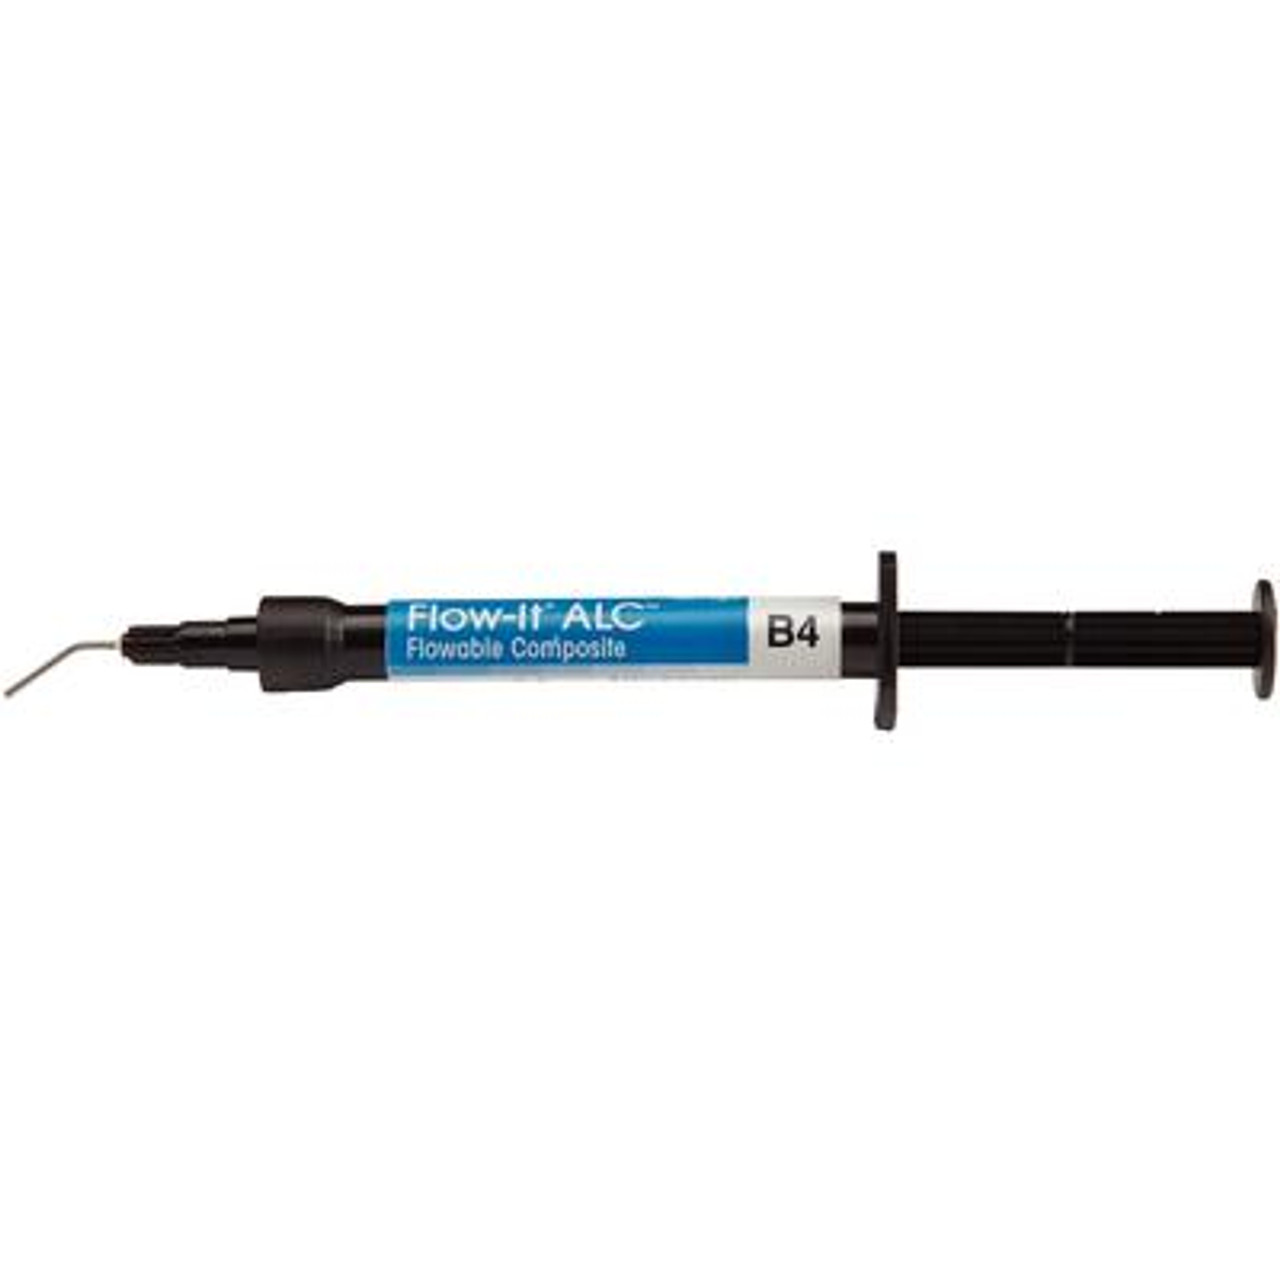 Pentron Flow-It ALC Flowable Composite B4 Syringe 4g & Tips